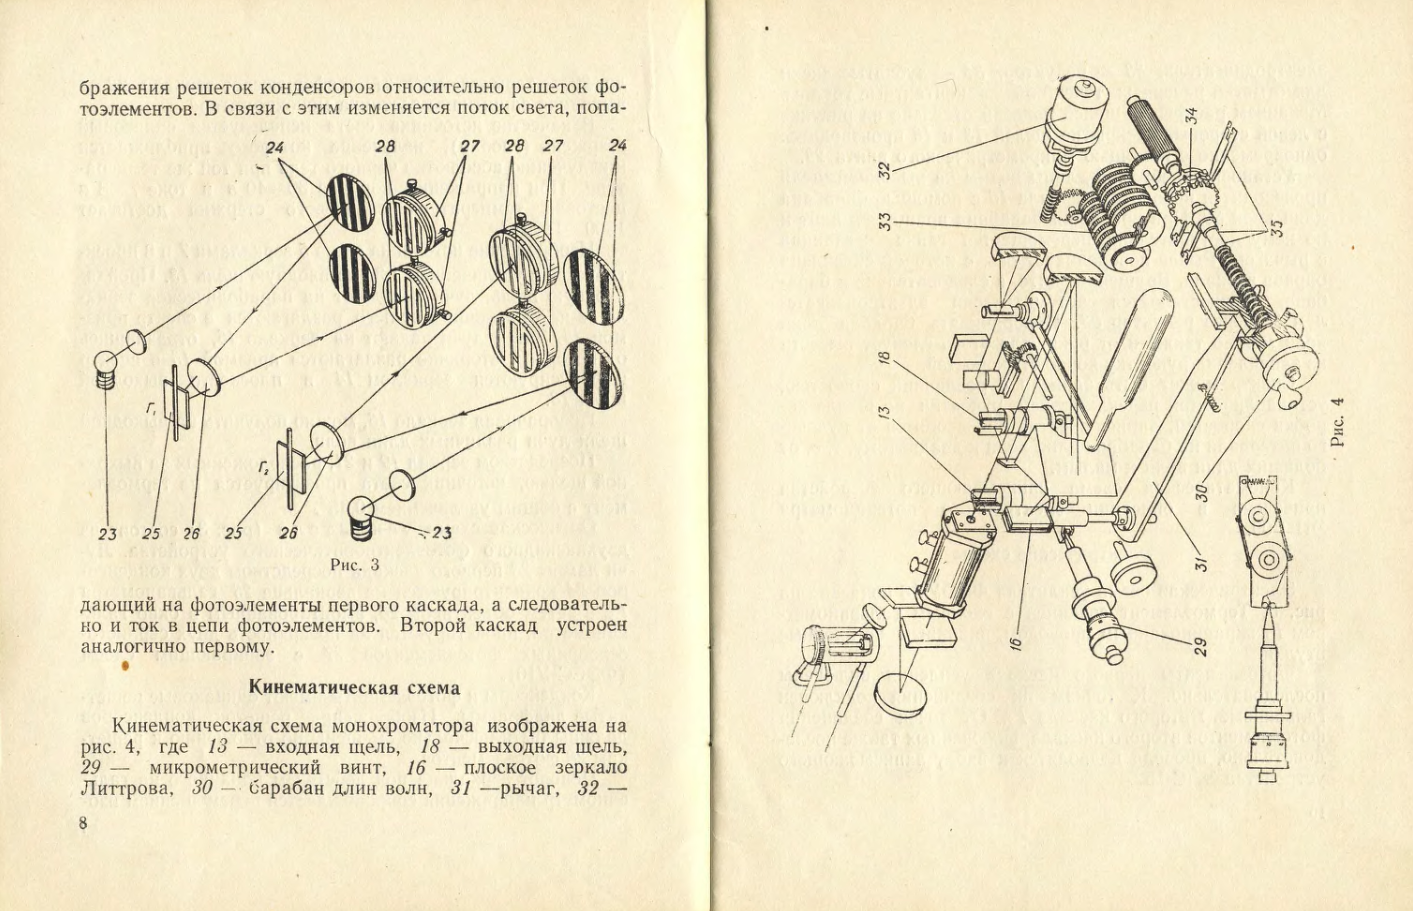 Спектрометр инфракрасный ИКС-12. Описание и руководство к пользованию. 1959